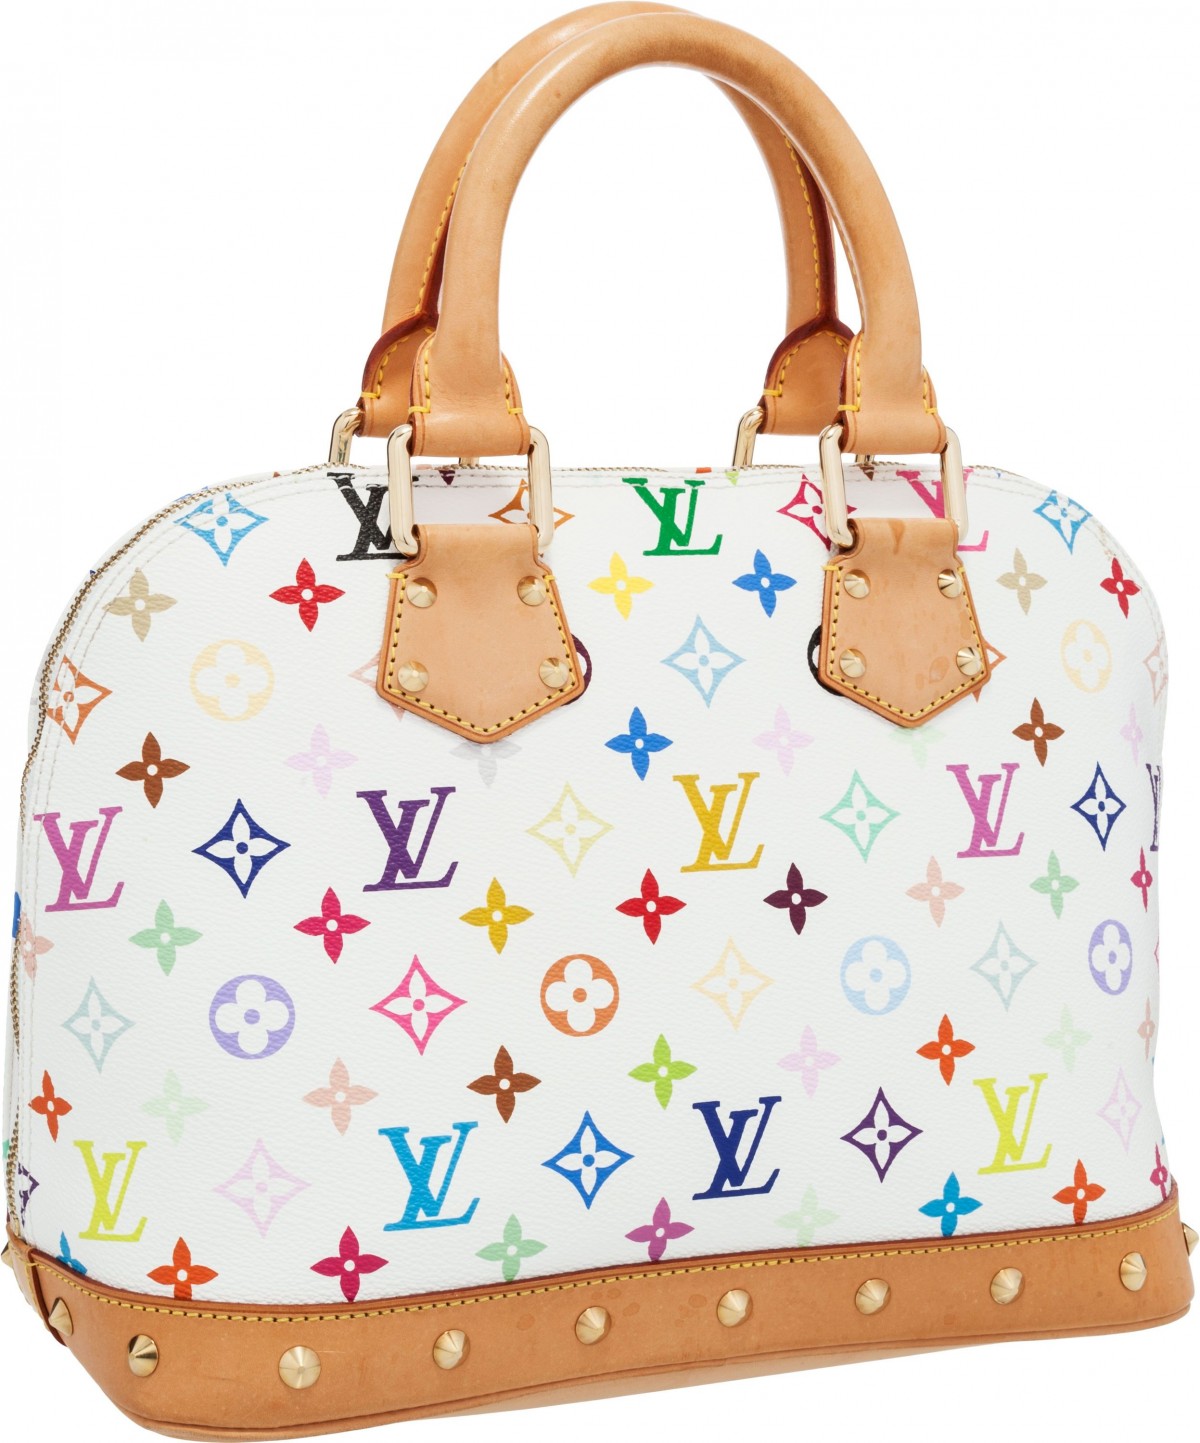 Bagaimanakah saya boleh membeli replika beg Louis Vuitton pelbagai warna dari China?(2022)-Kedai Dalam Talian Beg Louis Vuitton Palsu Kualiti Terbaik, Beg pereka replika ru